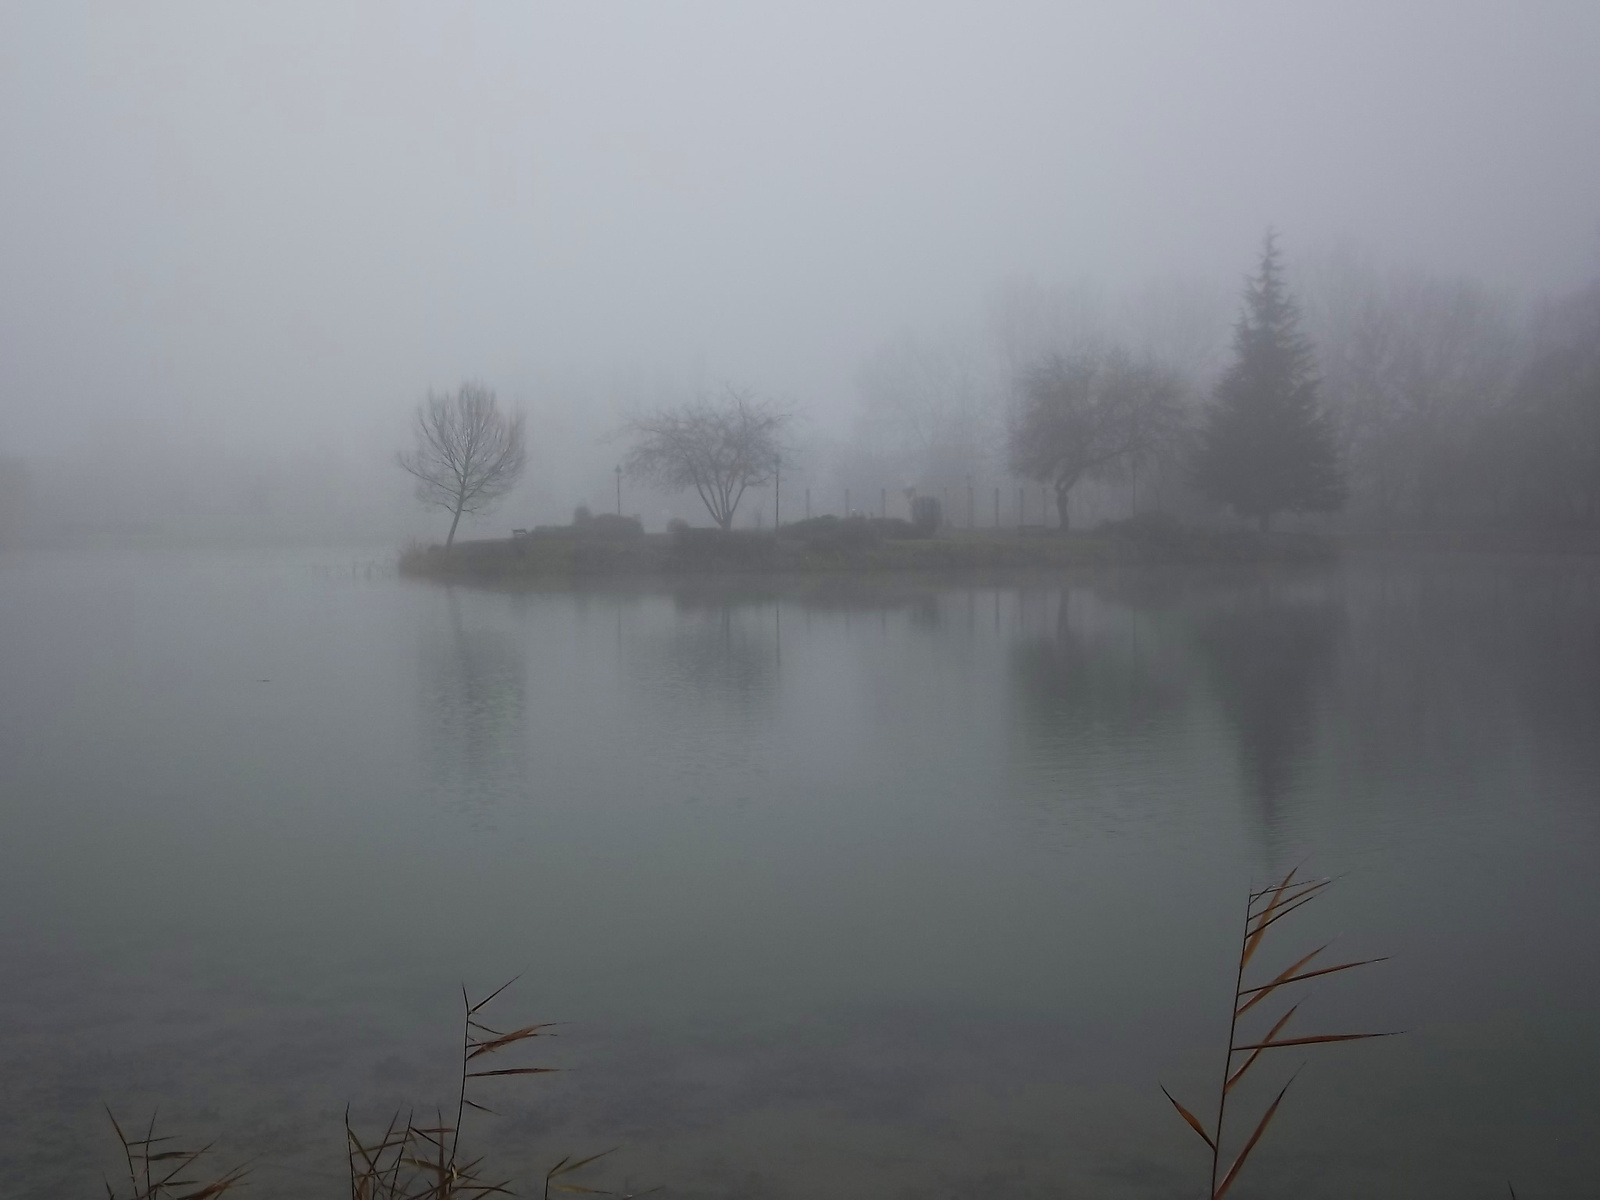 Ködös tópart 1